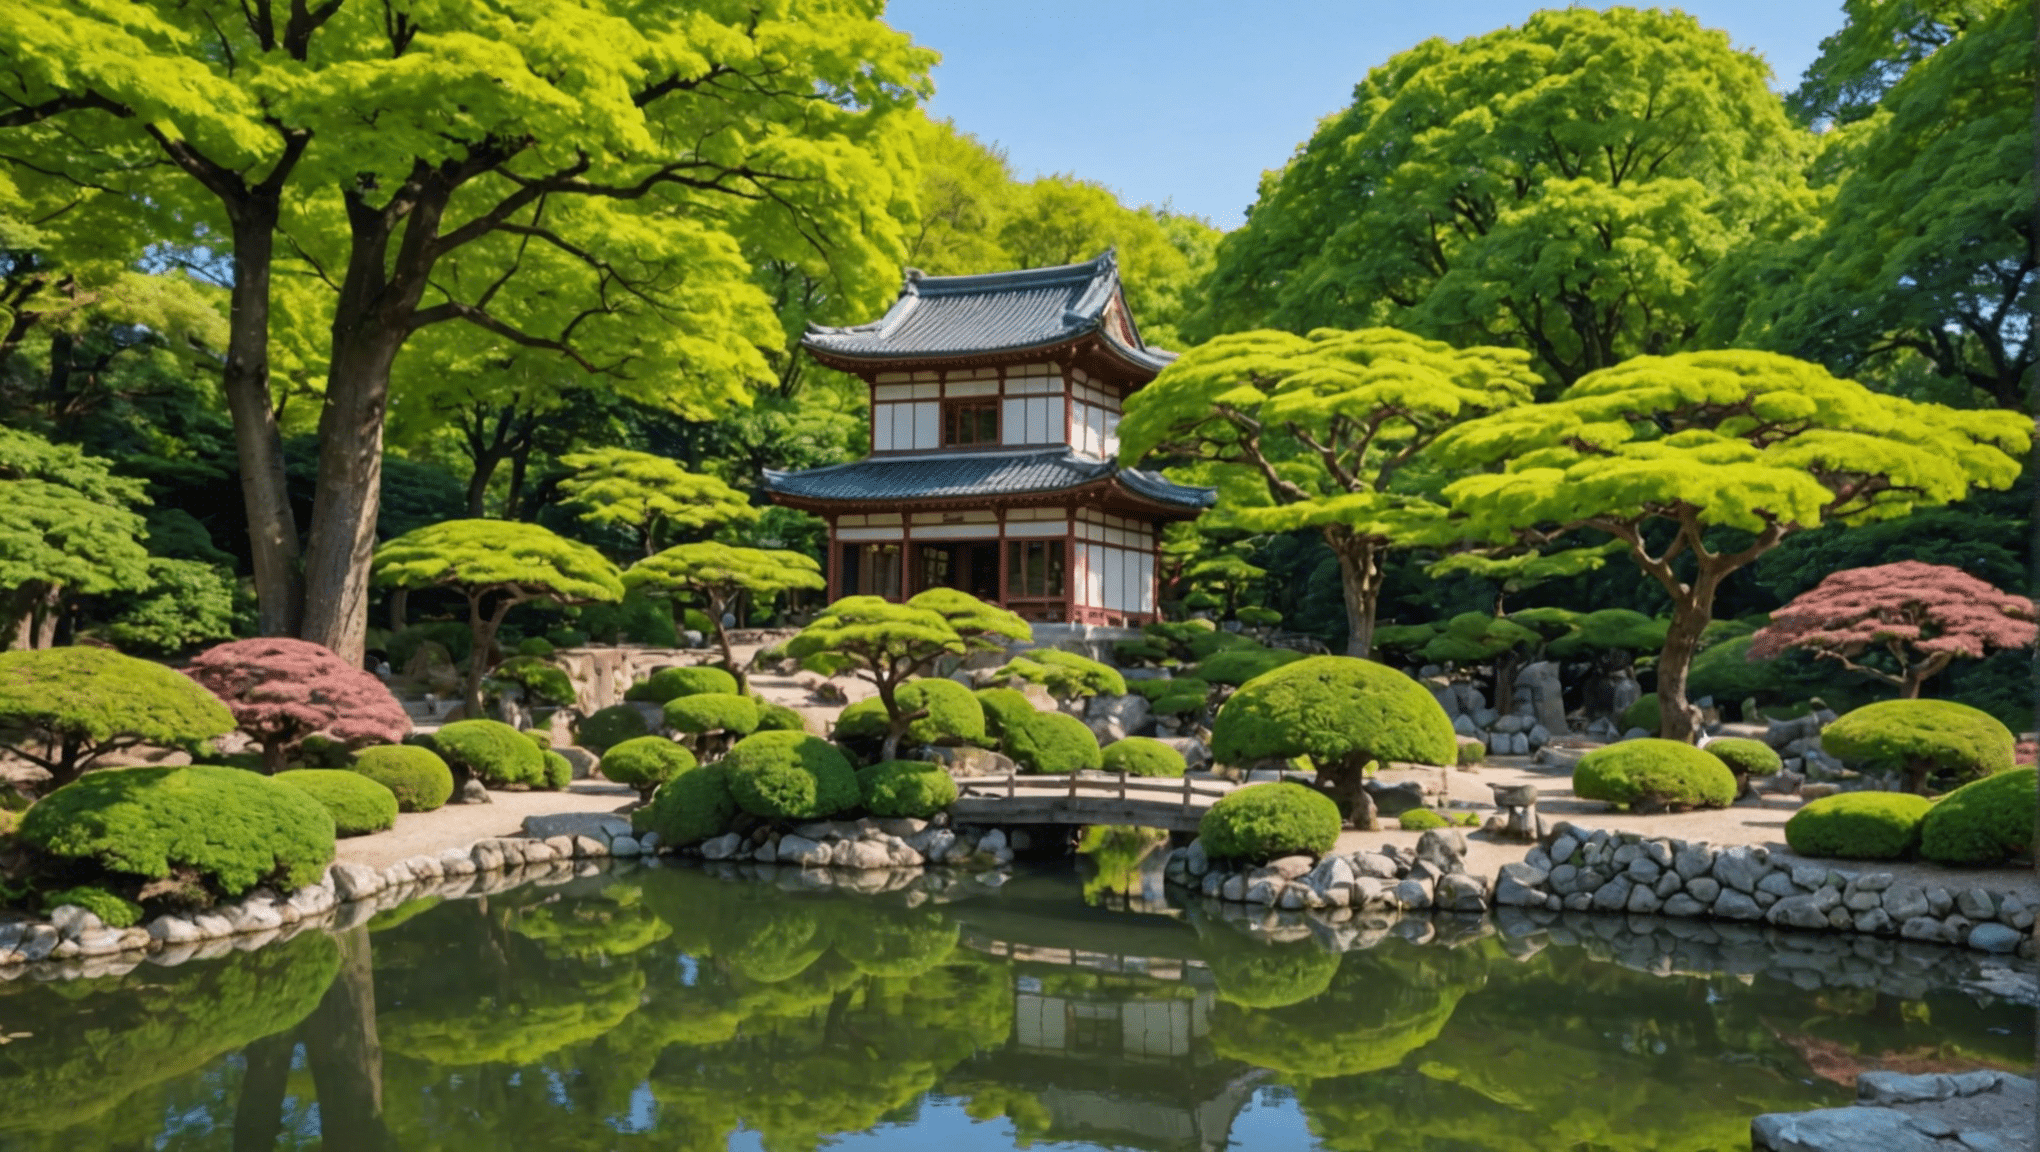 découvrez le magnifique jardin japonais de paris, un havre de paix et de sérénité au cœur de la ville lumière. promenez-vous parmi les cerisiers en fleurs, les étangs paisibles et les authentiques lanternes japonaises.